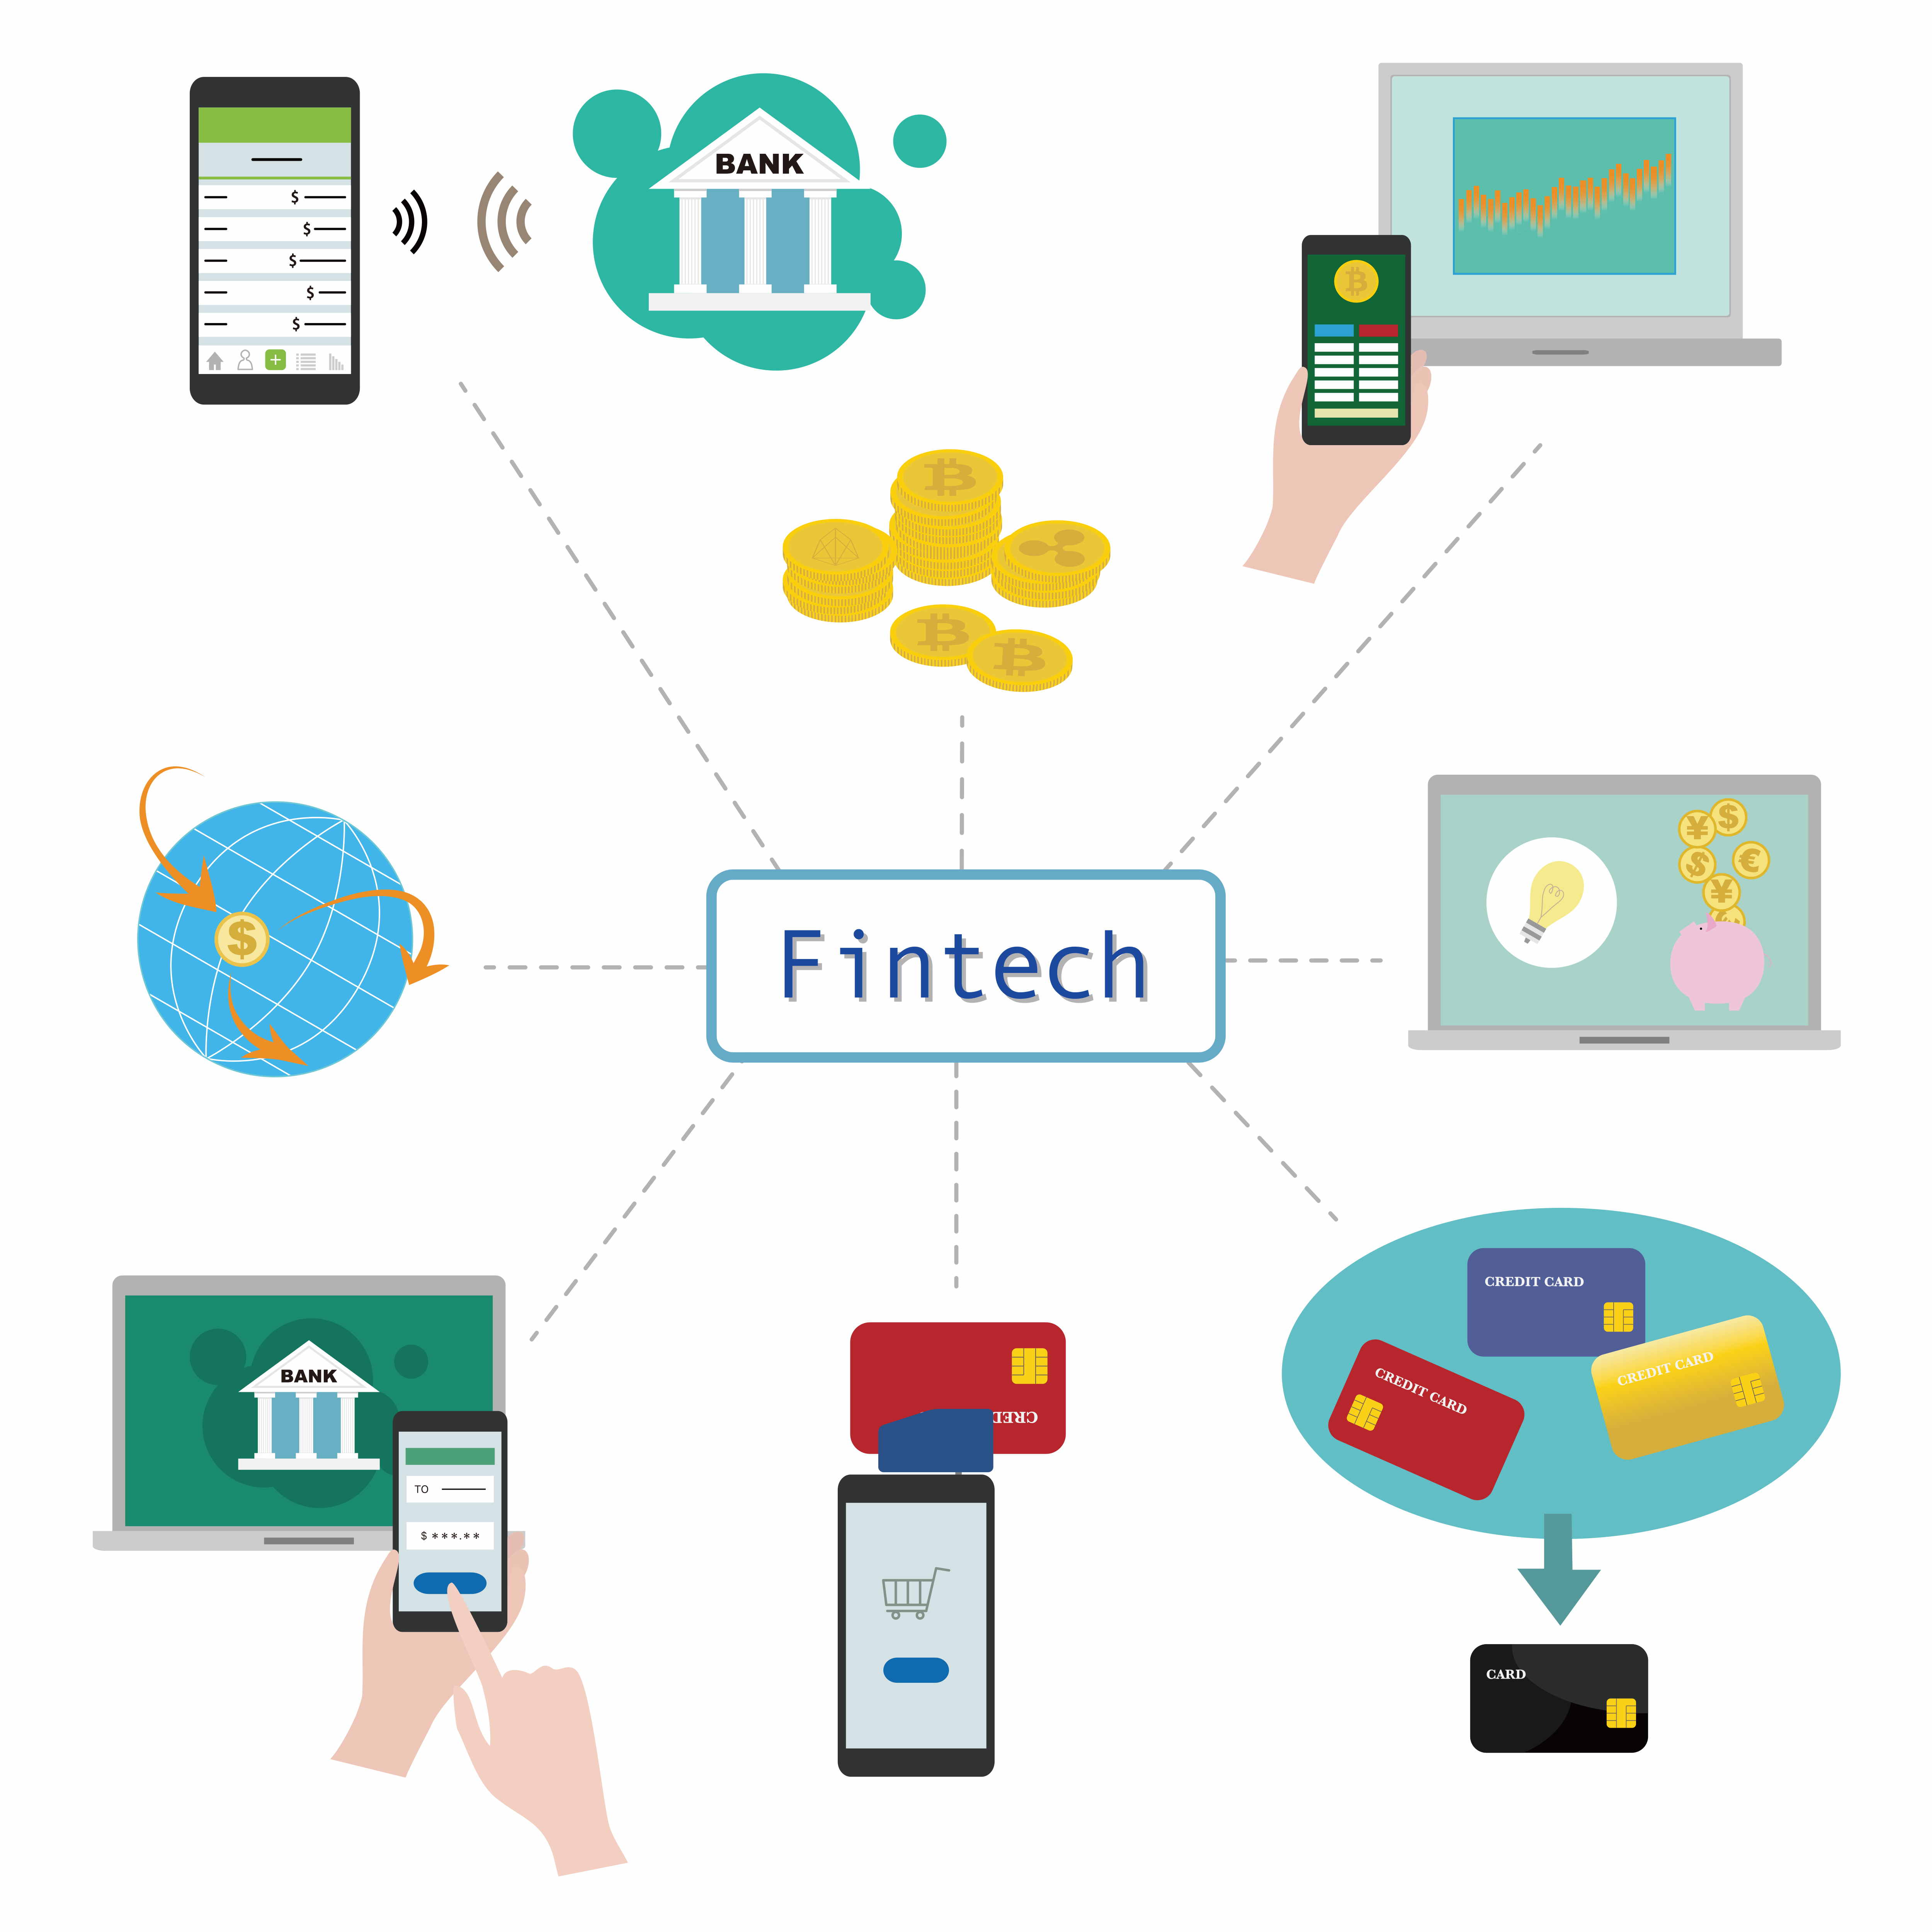 Fintech - Financial Technology